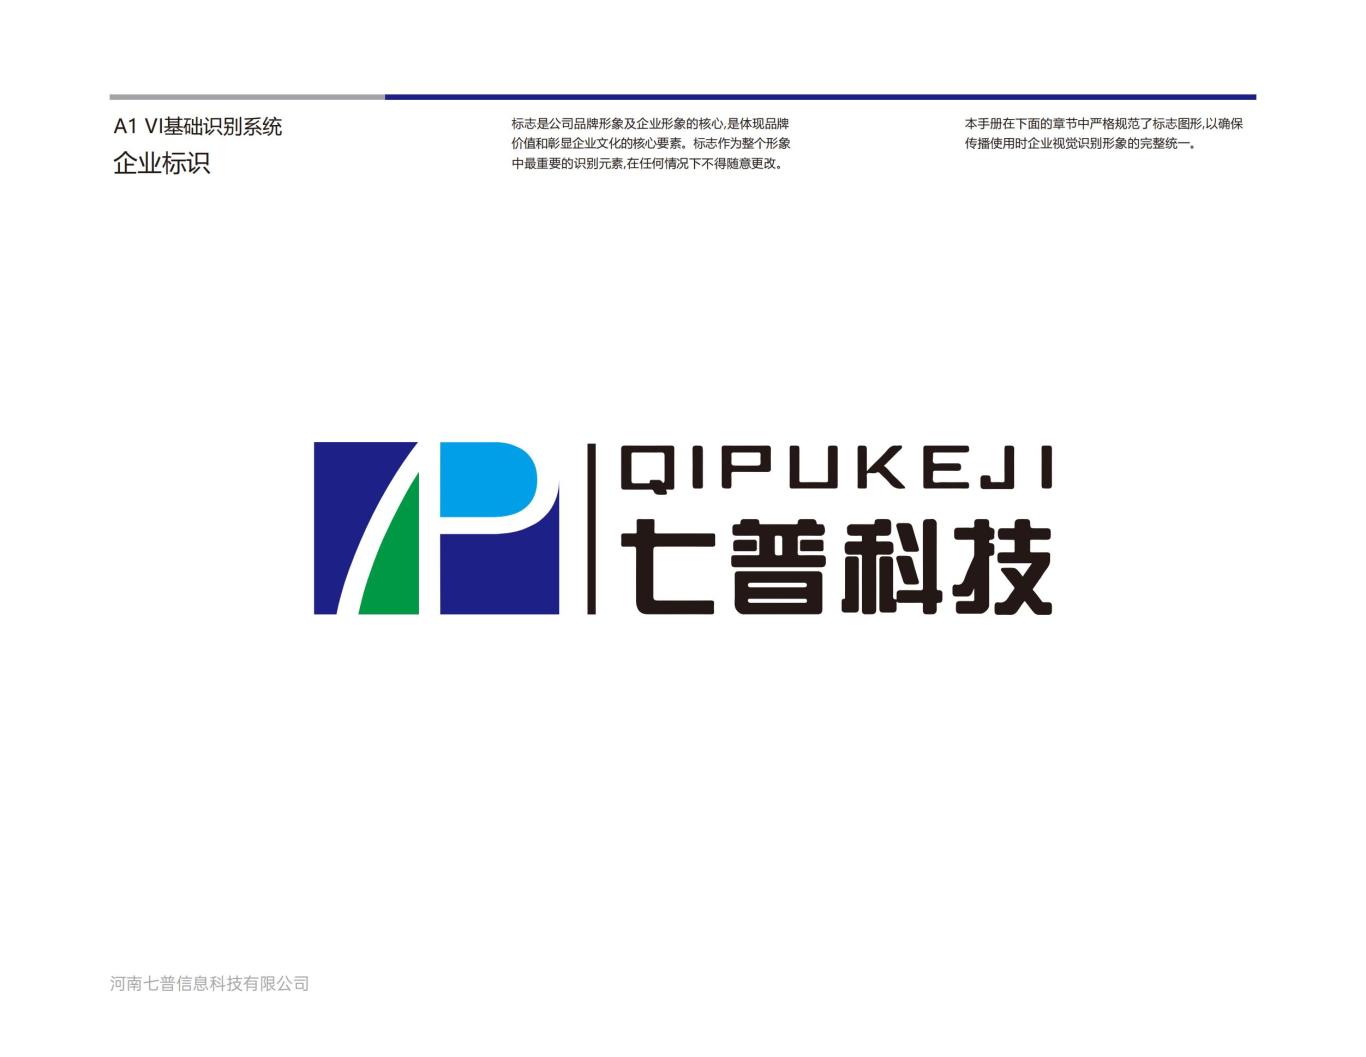 河南七普信息科技有限公司logo提案B图4